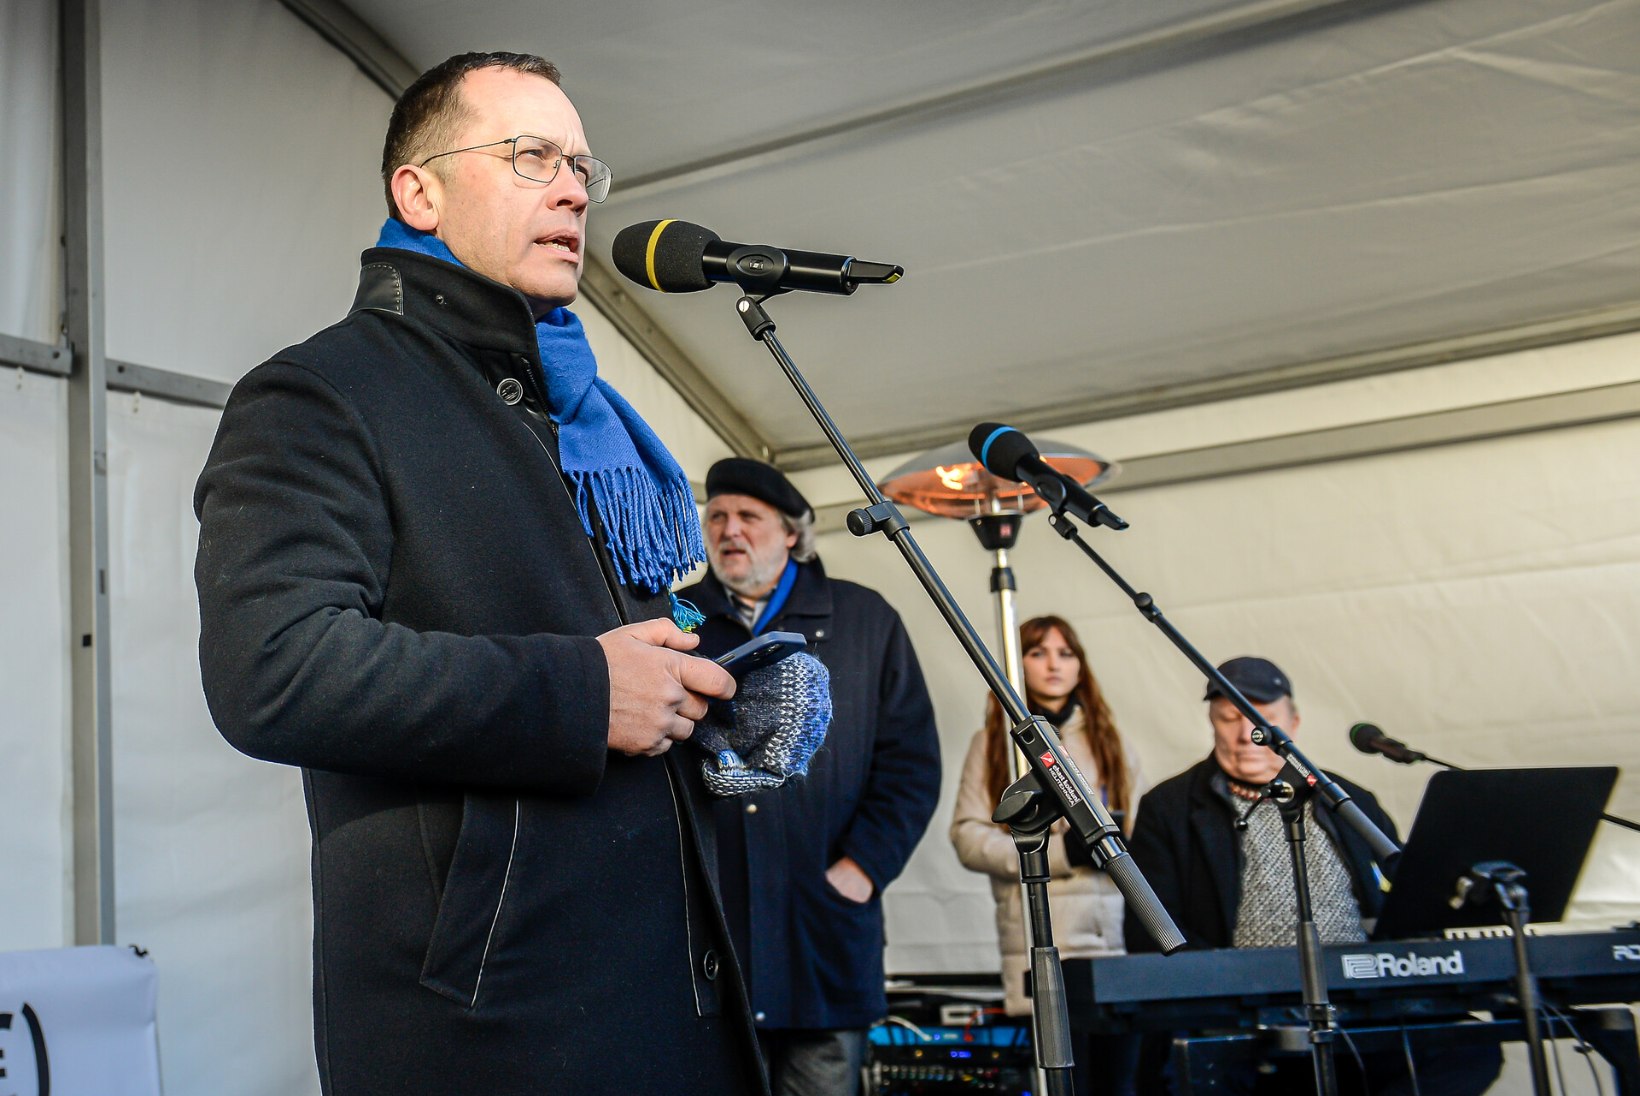 KUHU INIMESED PANNA?! Tallinn võib Ukraina sõjapõgenike abistamisel hätta jääda